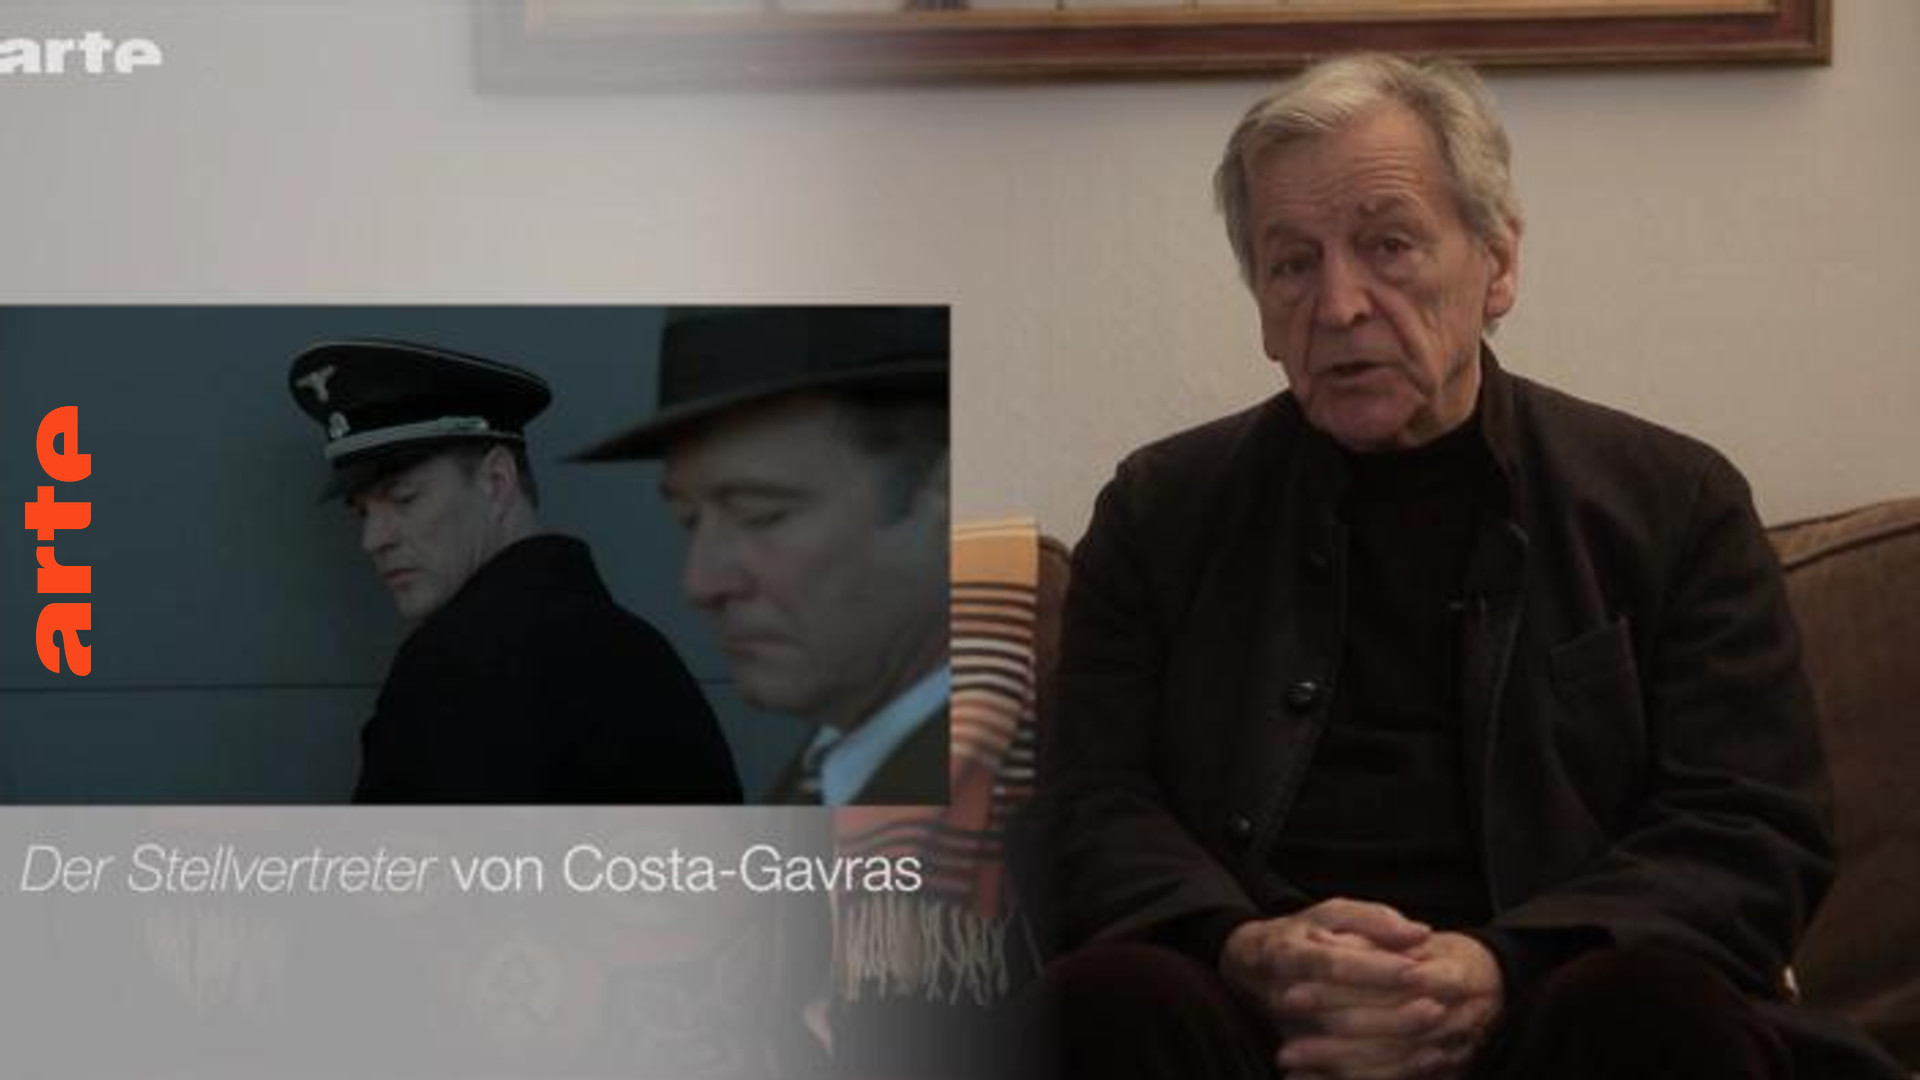 Der Stellvertreter: Interview mit Costa-Gavras